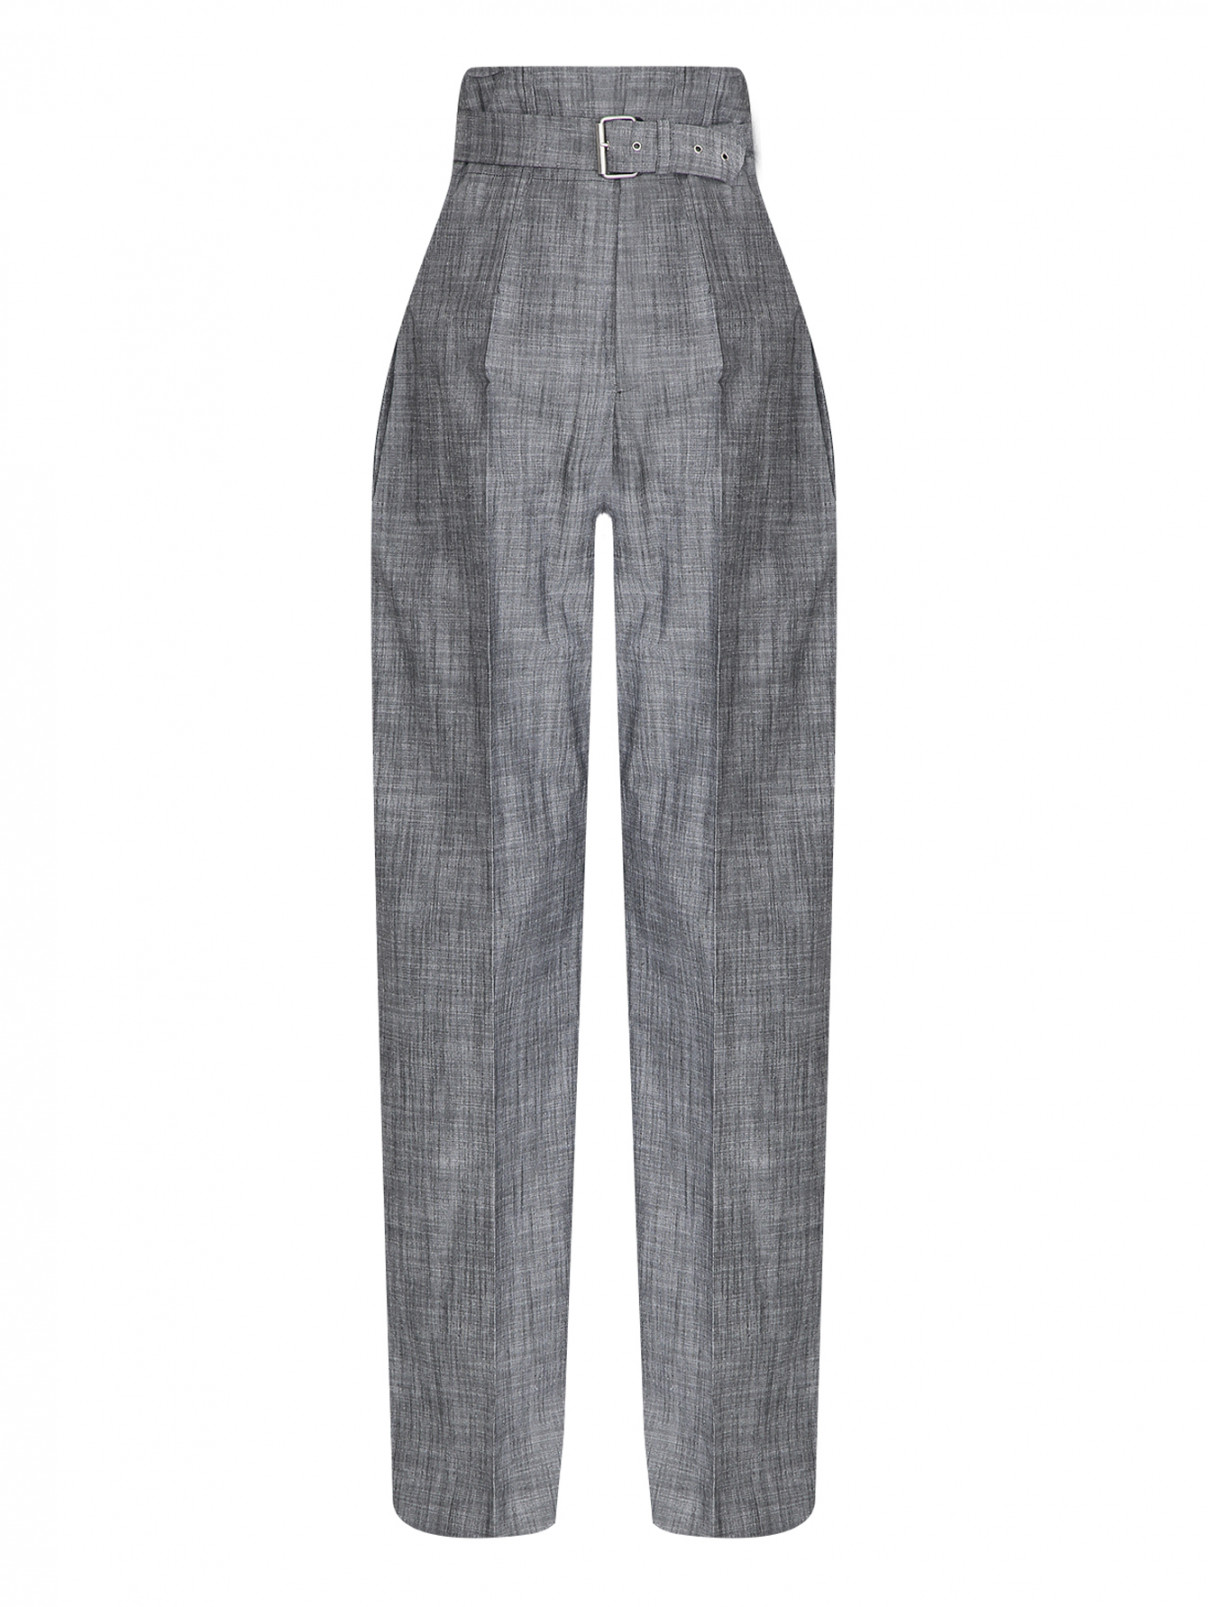 Широкие брюки из хлопка с поясом Philosophy di Lorenzo Serafini  –  Общий вид  – Цвет:  Серый